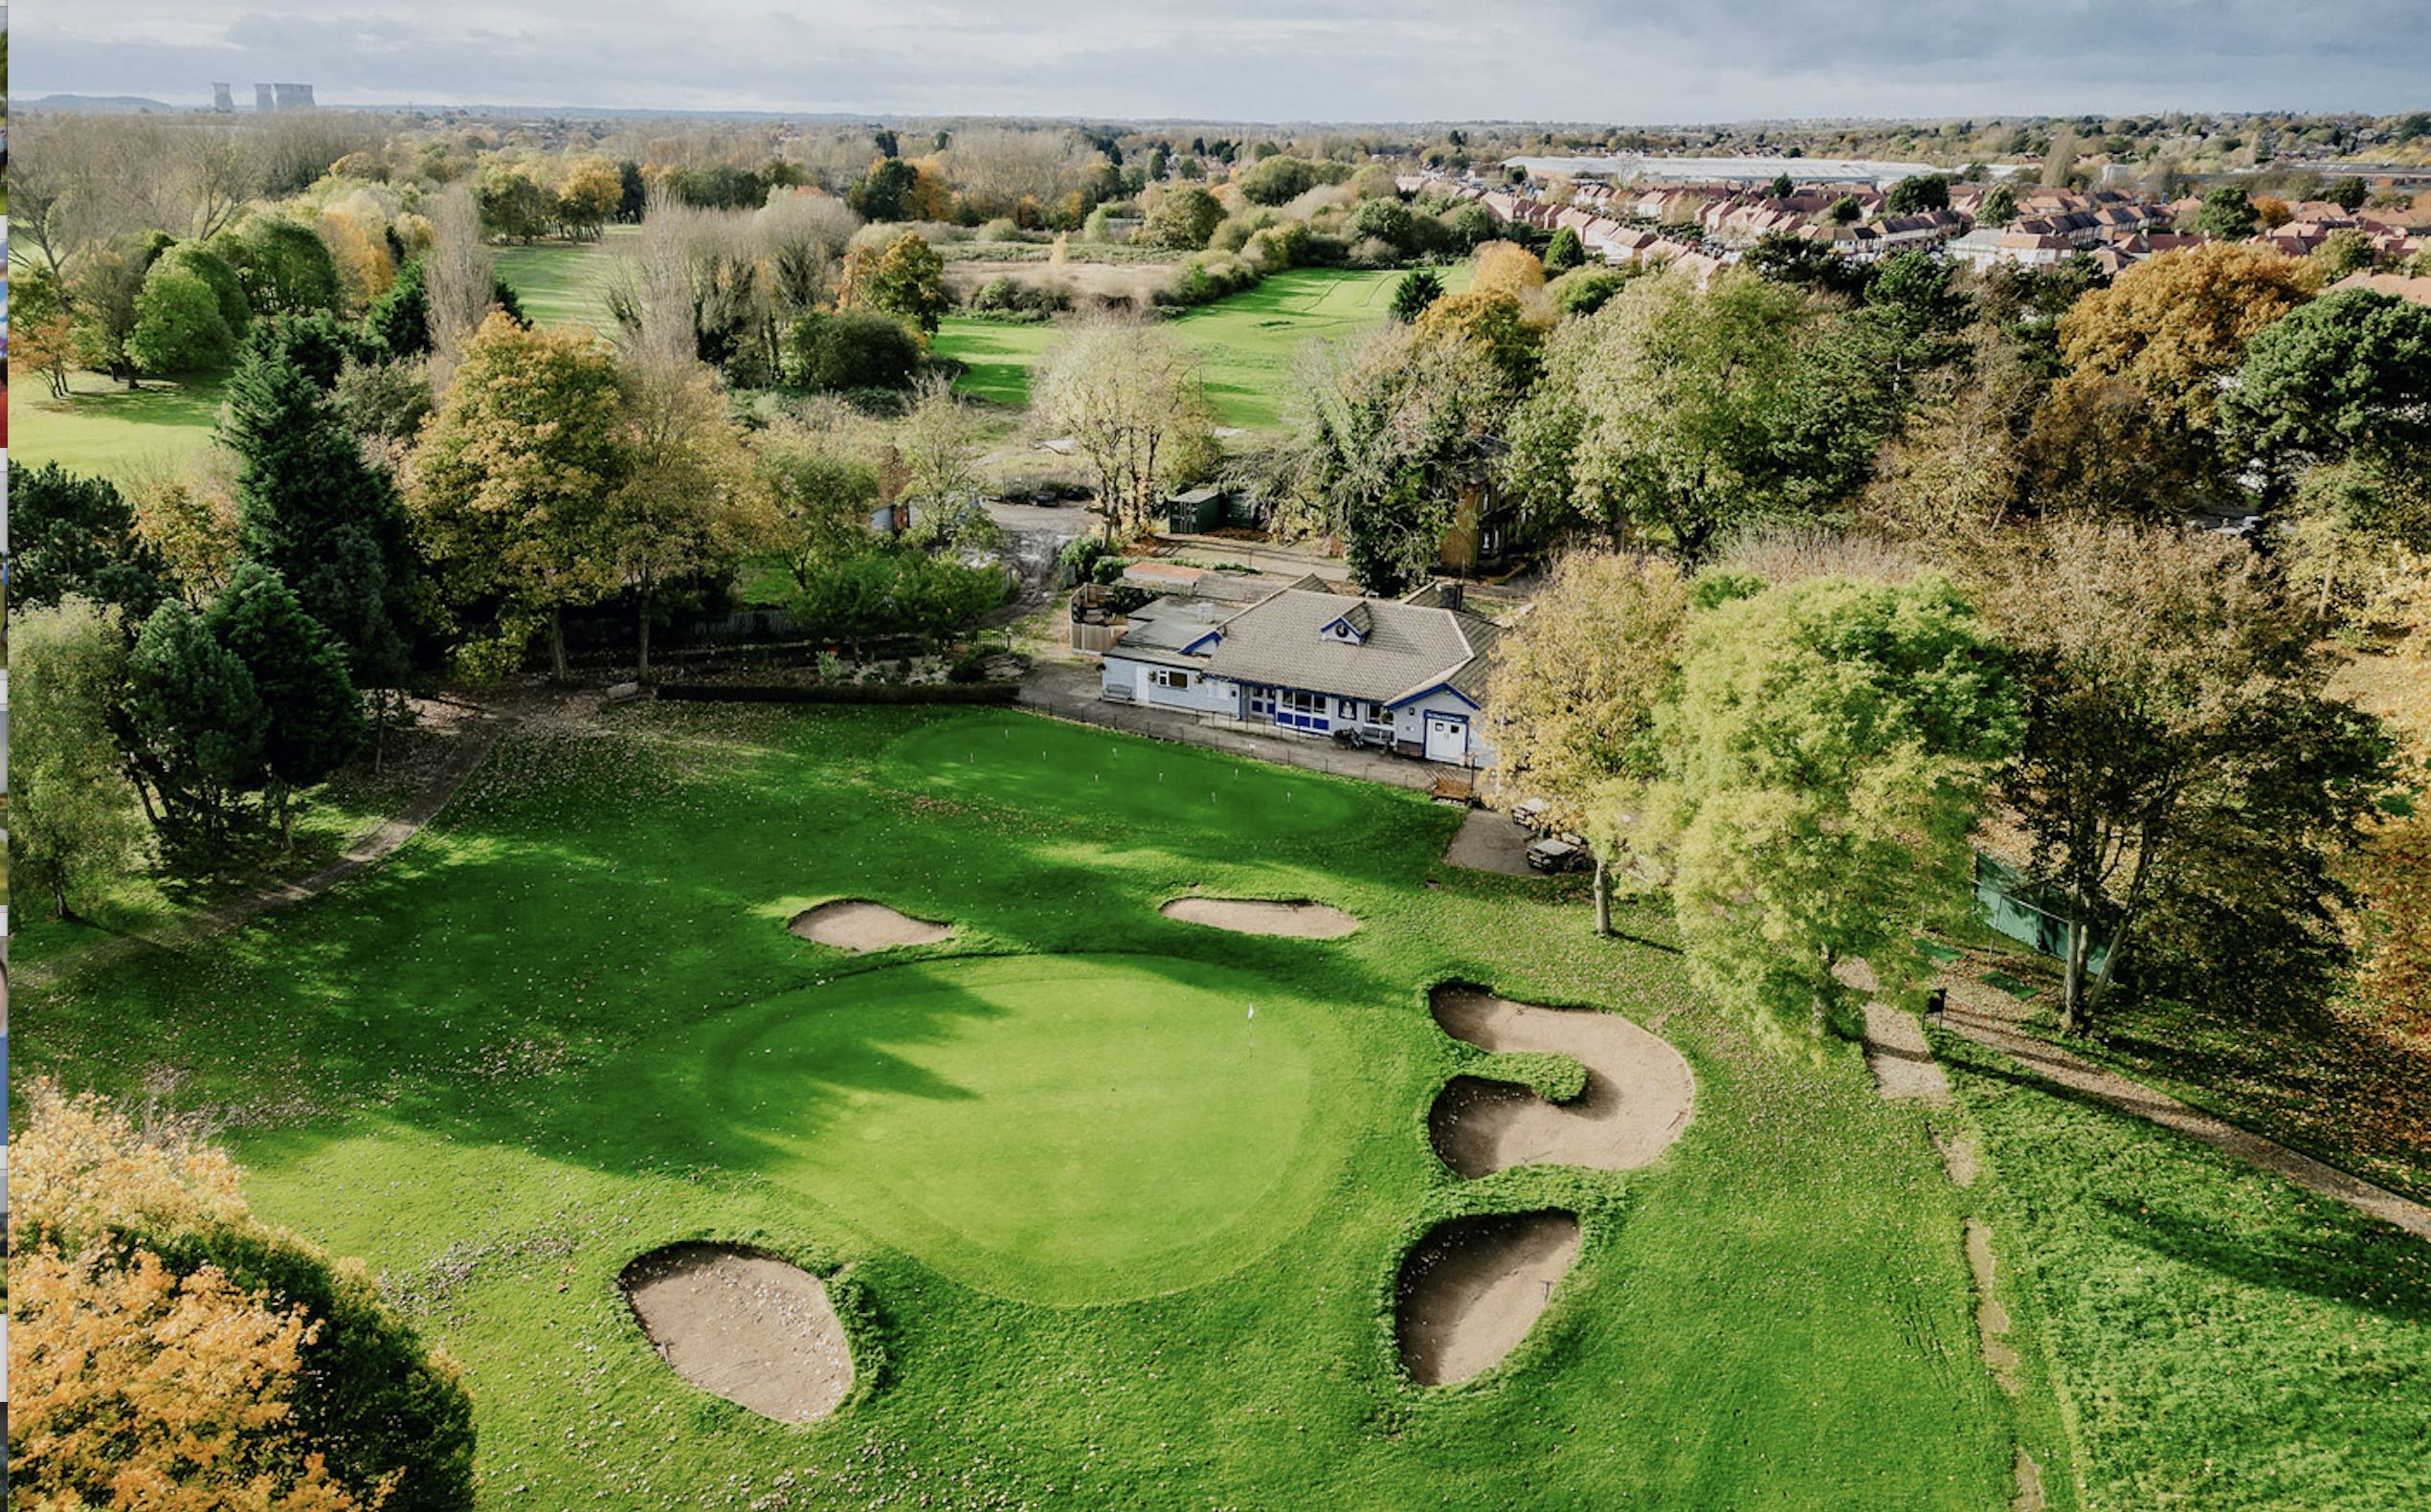 Sinfin Golf Course in Derby